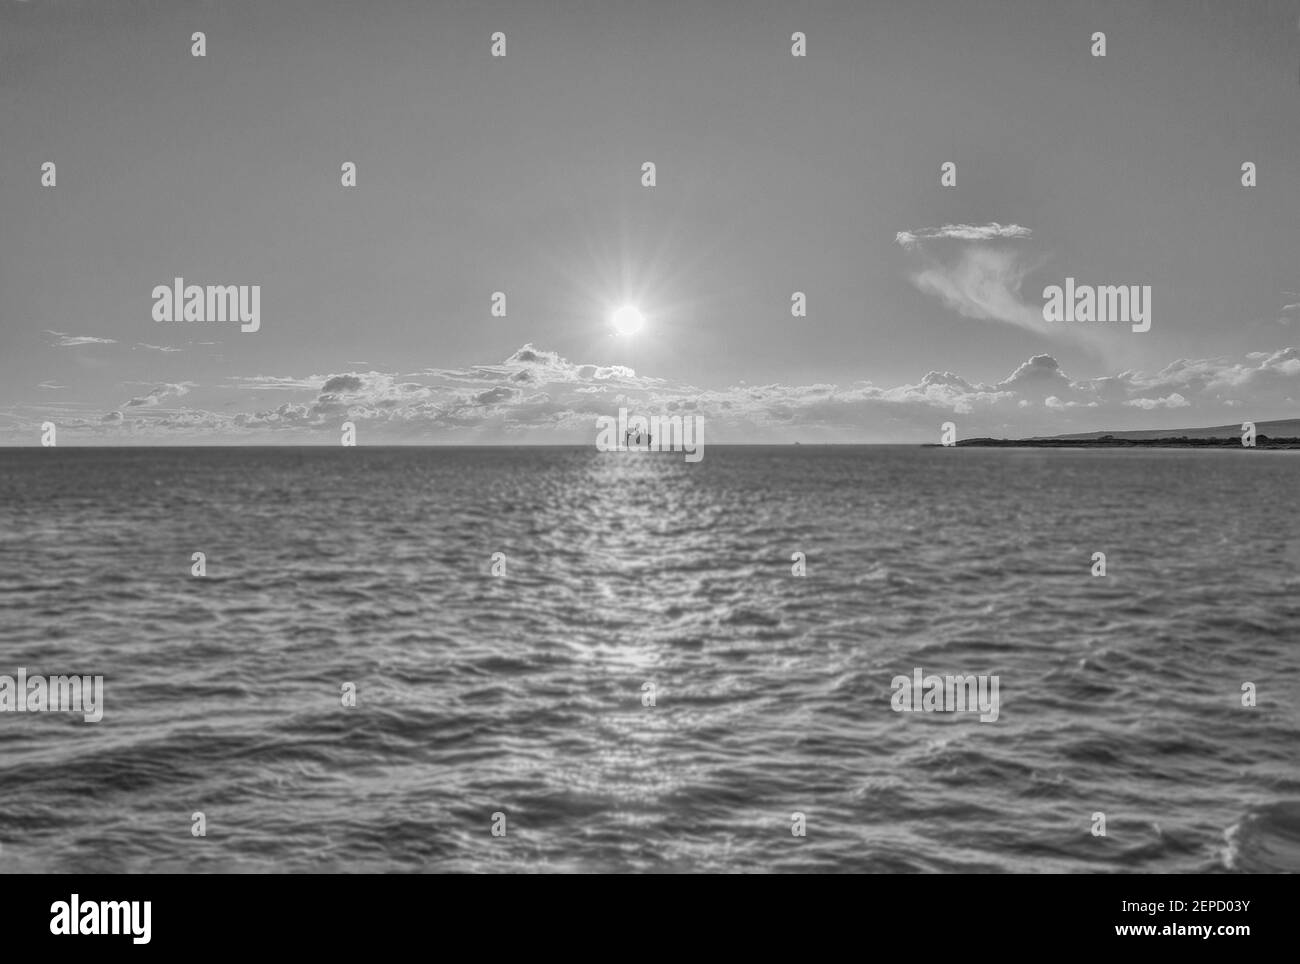 Ein Kunstbild eines Schiffs am Horizont Unter dem Scheinwerferlicht Sonne in schwarz und weiß Stockfoto